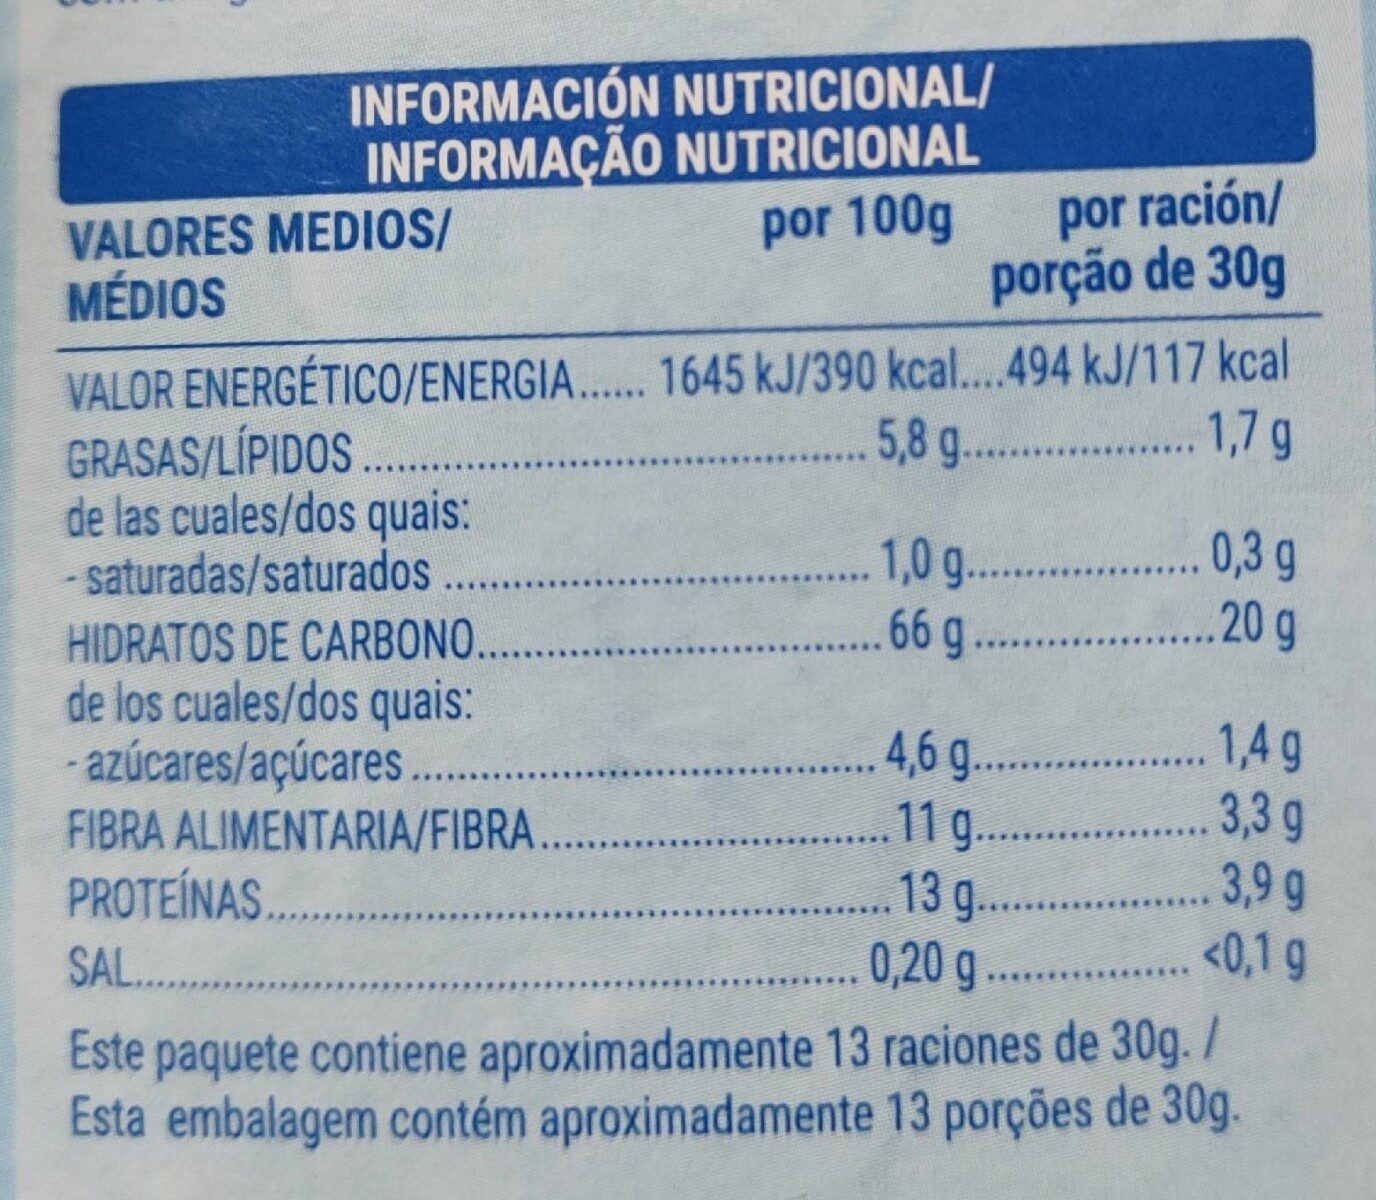 Cereales Avena Crunchy 85% Avena Integral y Bajo Contenido en Azúcar - Nutrition facts - es